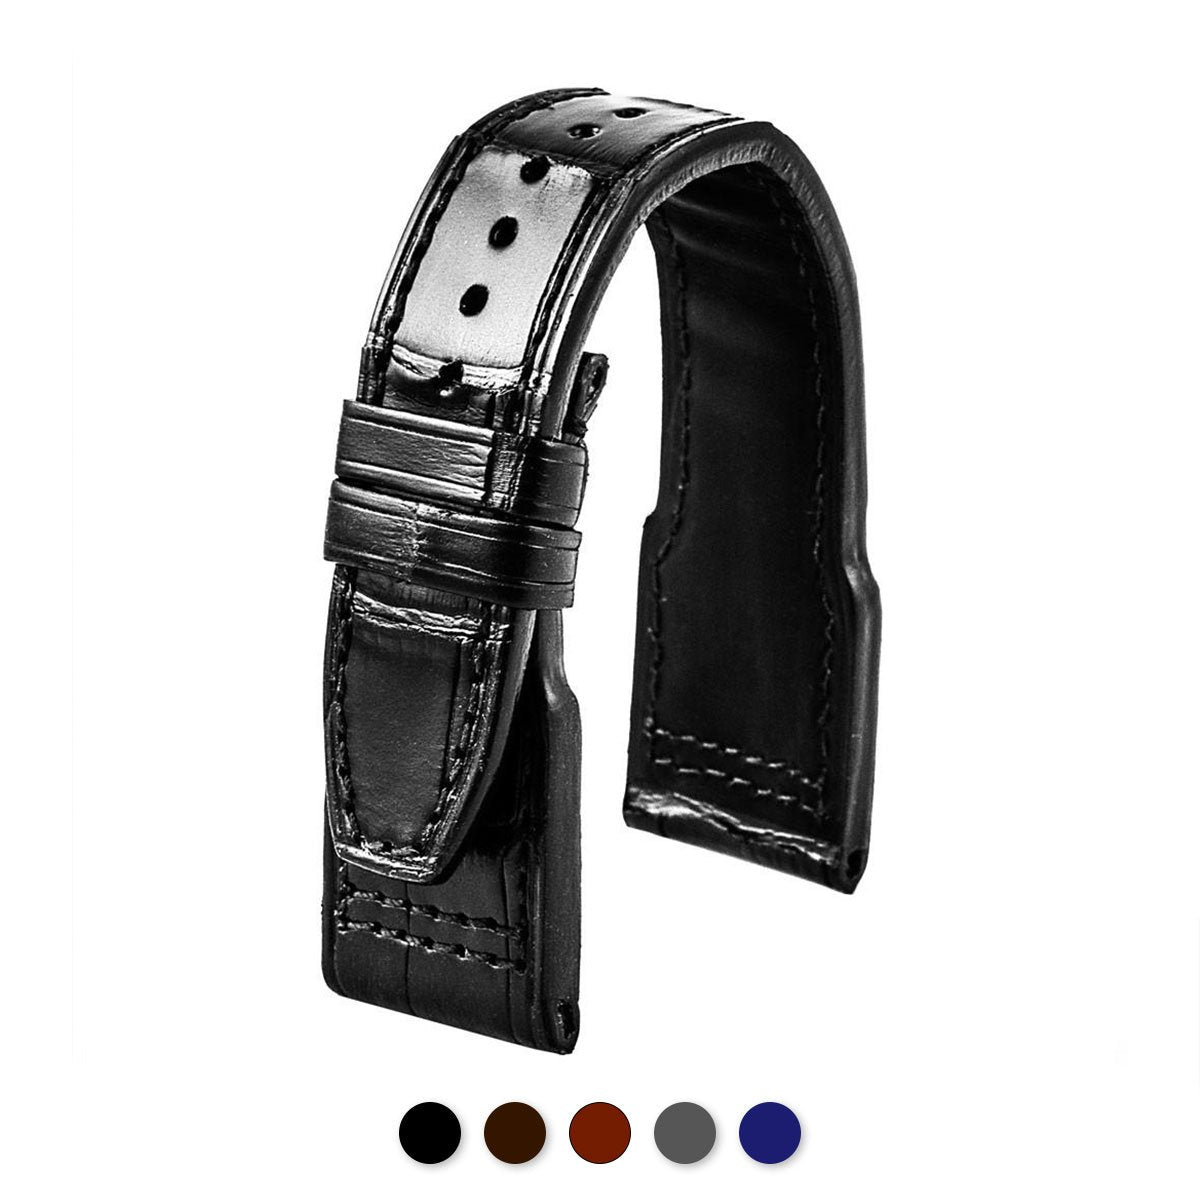 IWC Big Pilot - Bracelet montre cuir - Alligator (noir, marron, gris, bleu) - watch band leather strap - ABP Concept -